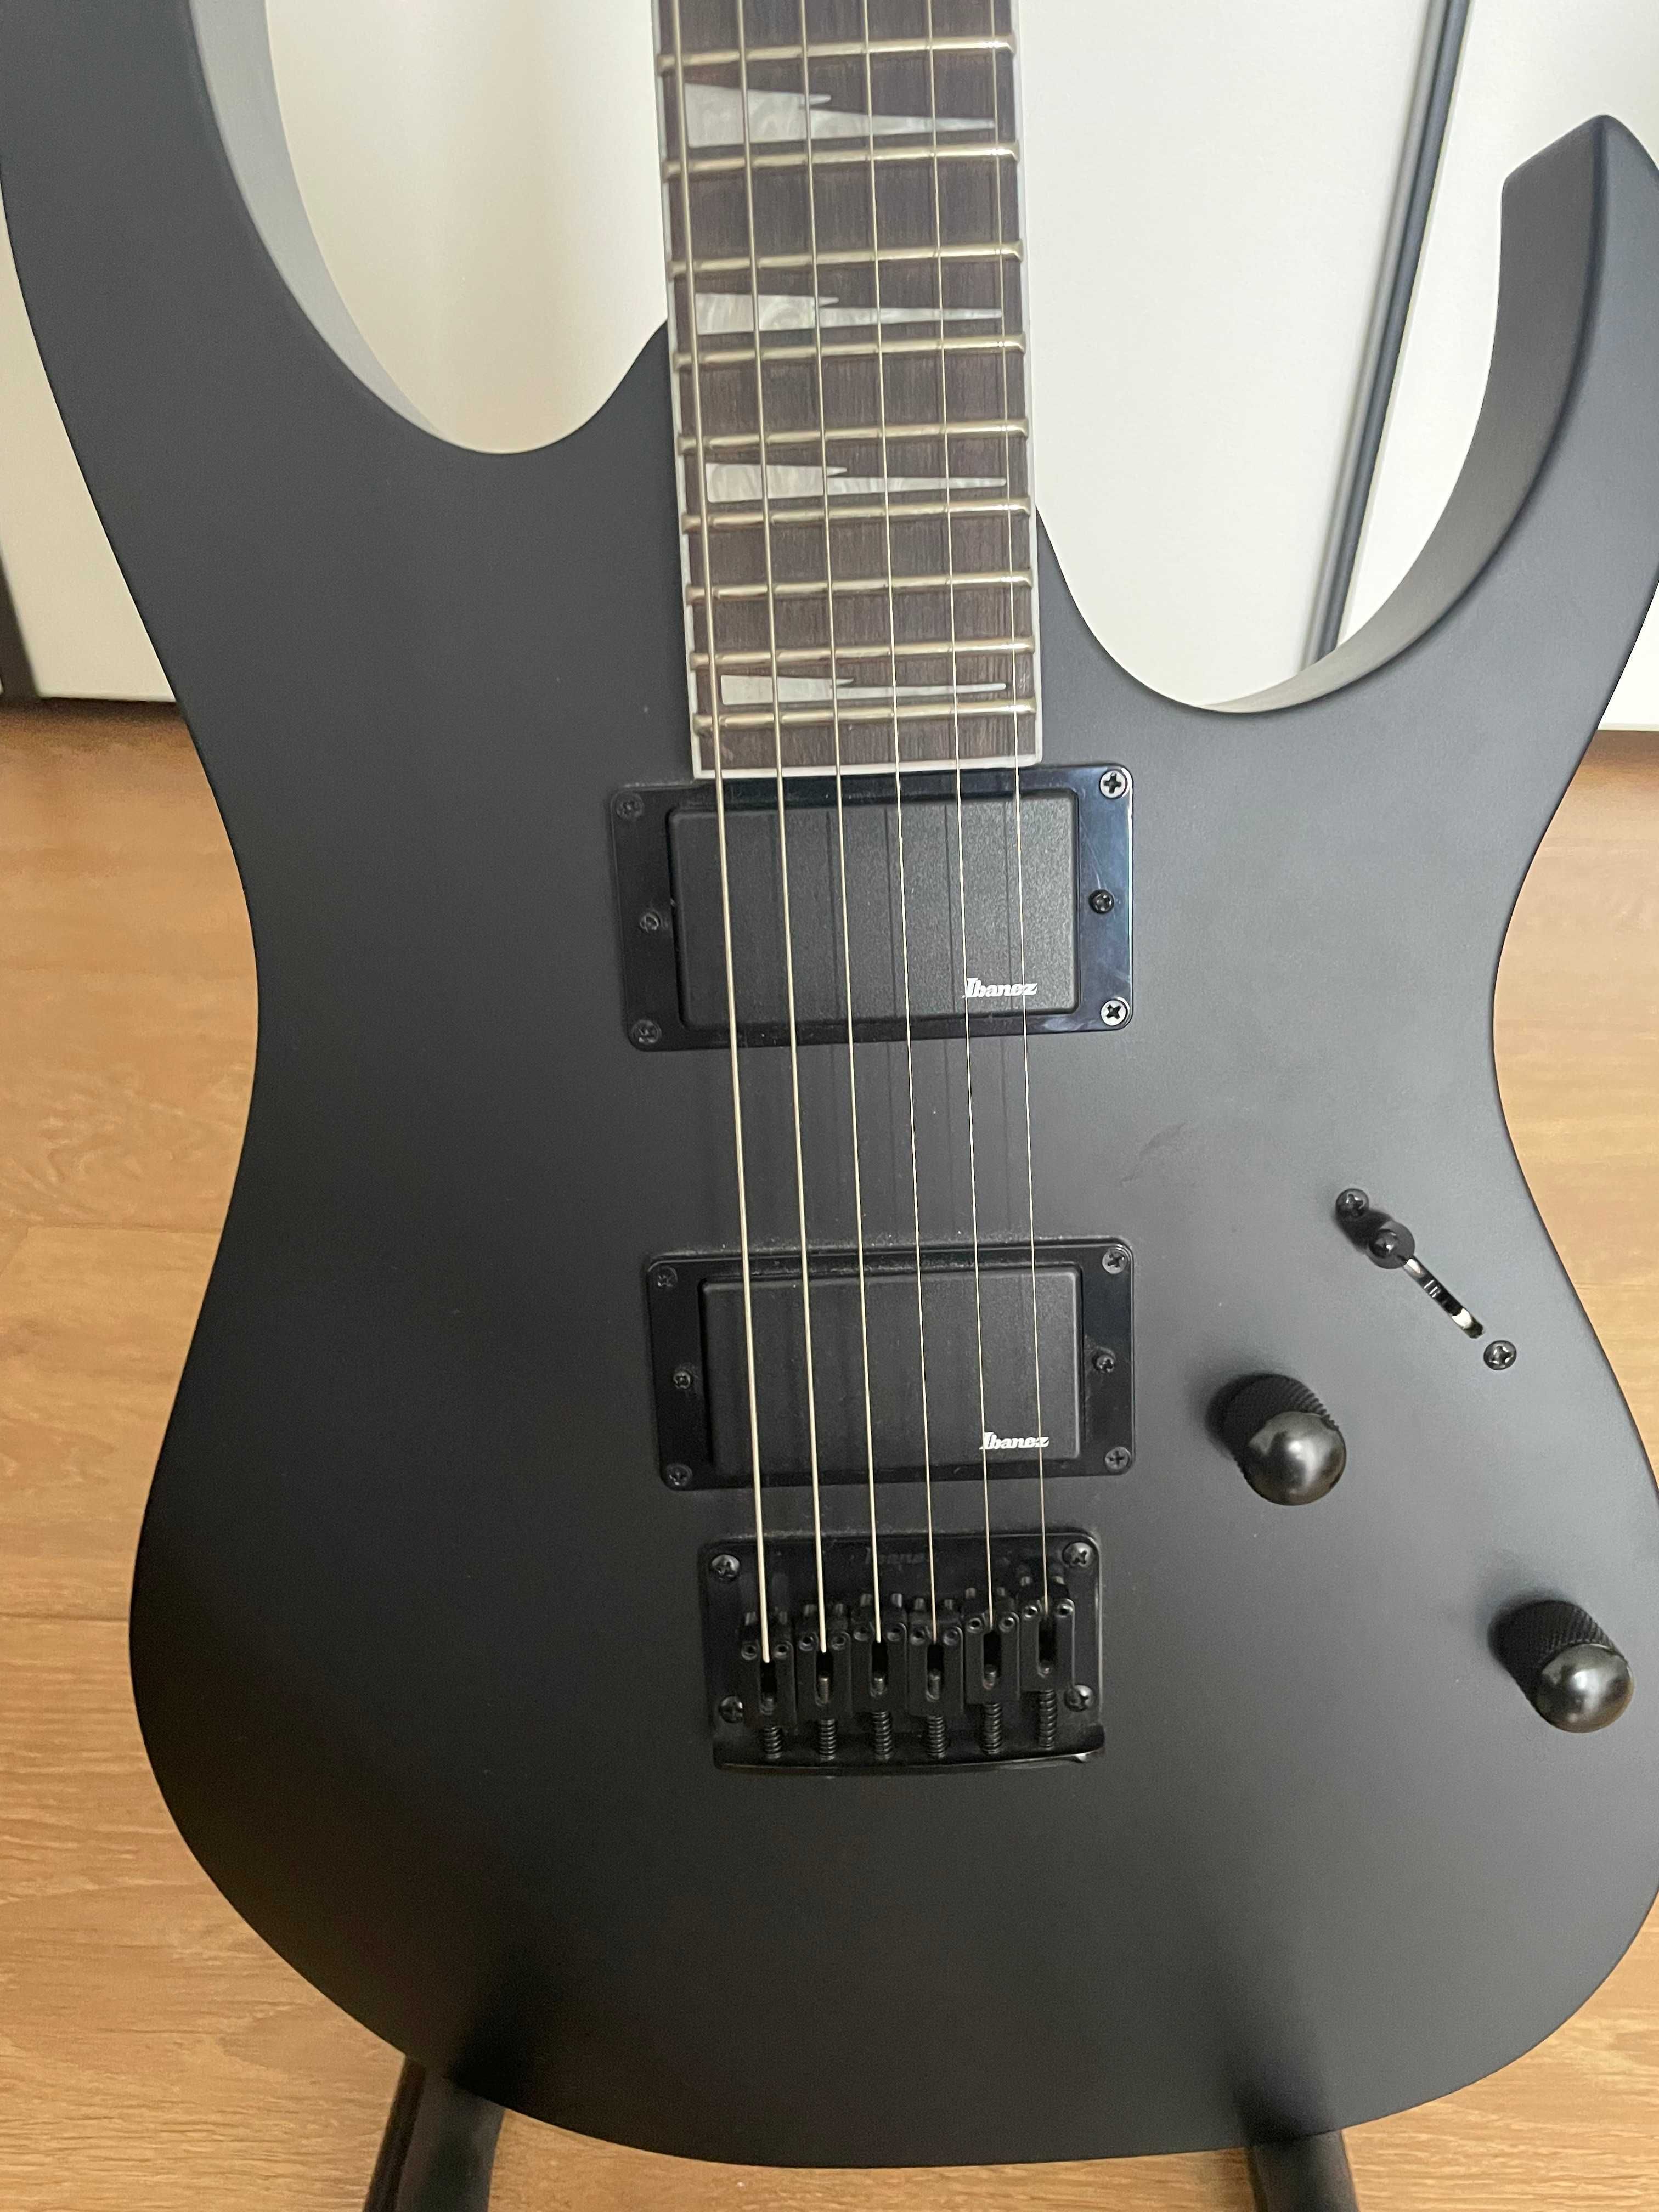 Gitara elektryczna Ibanez GRG 121 DX wzmacniacz Ibanez akcesoria